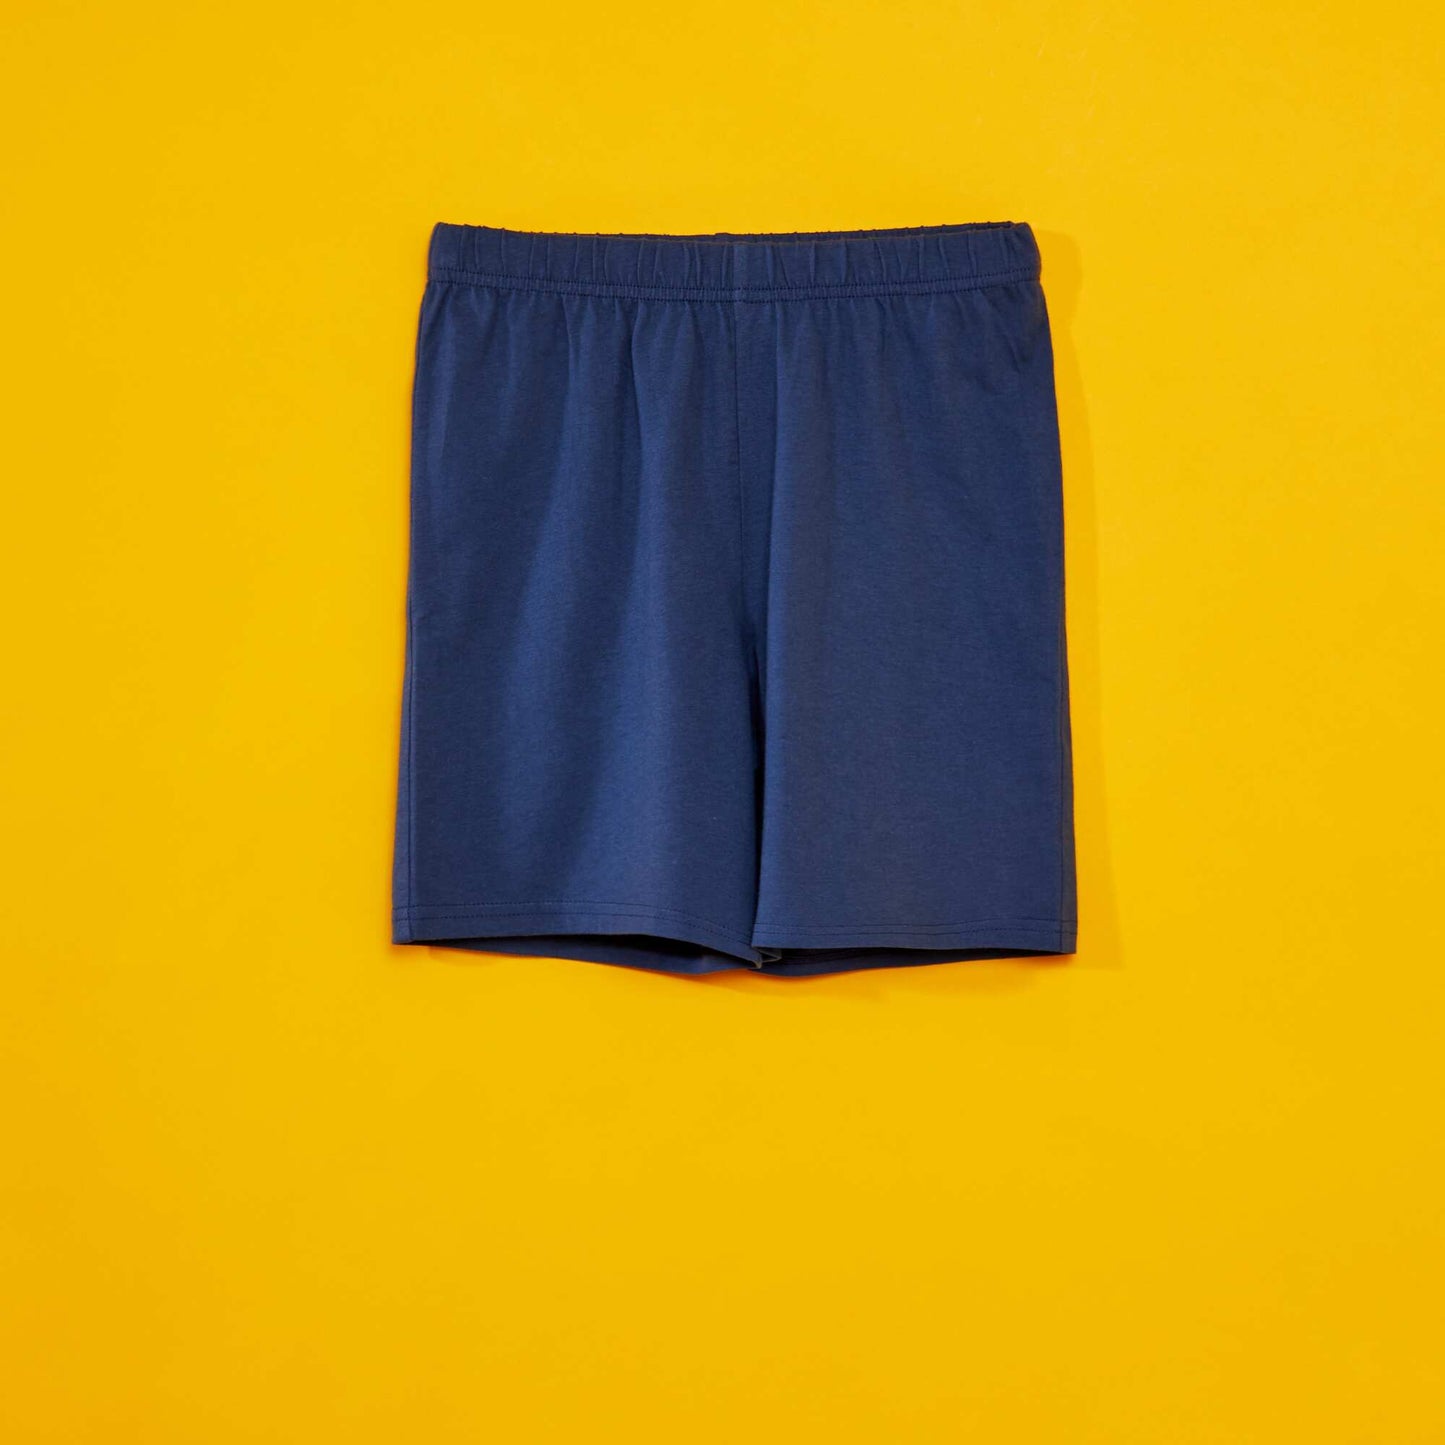 Short 'Minions' pyjamas - 2-piece set GREY